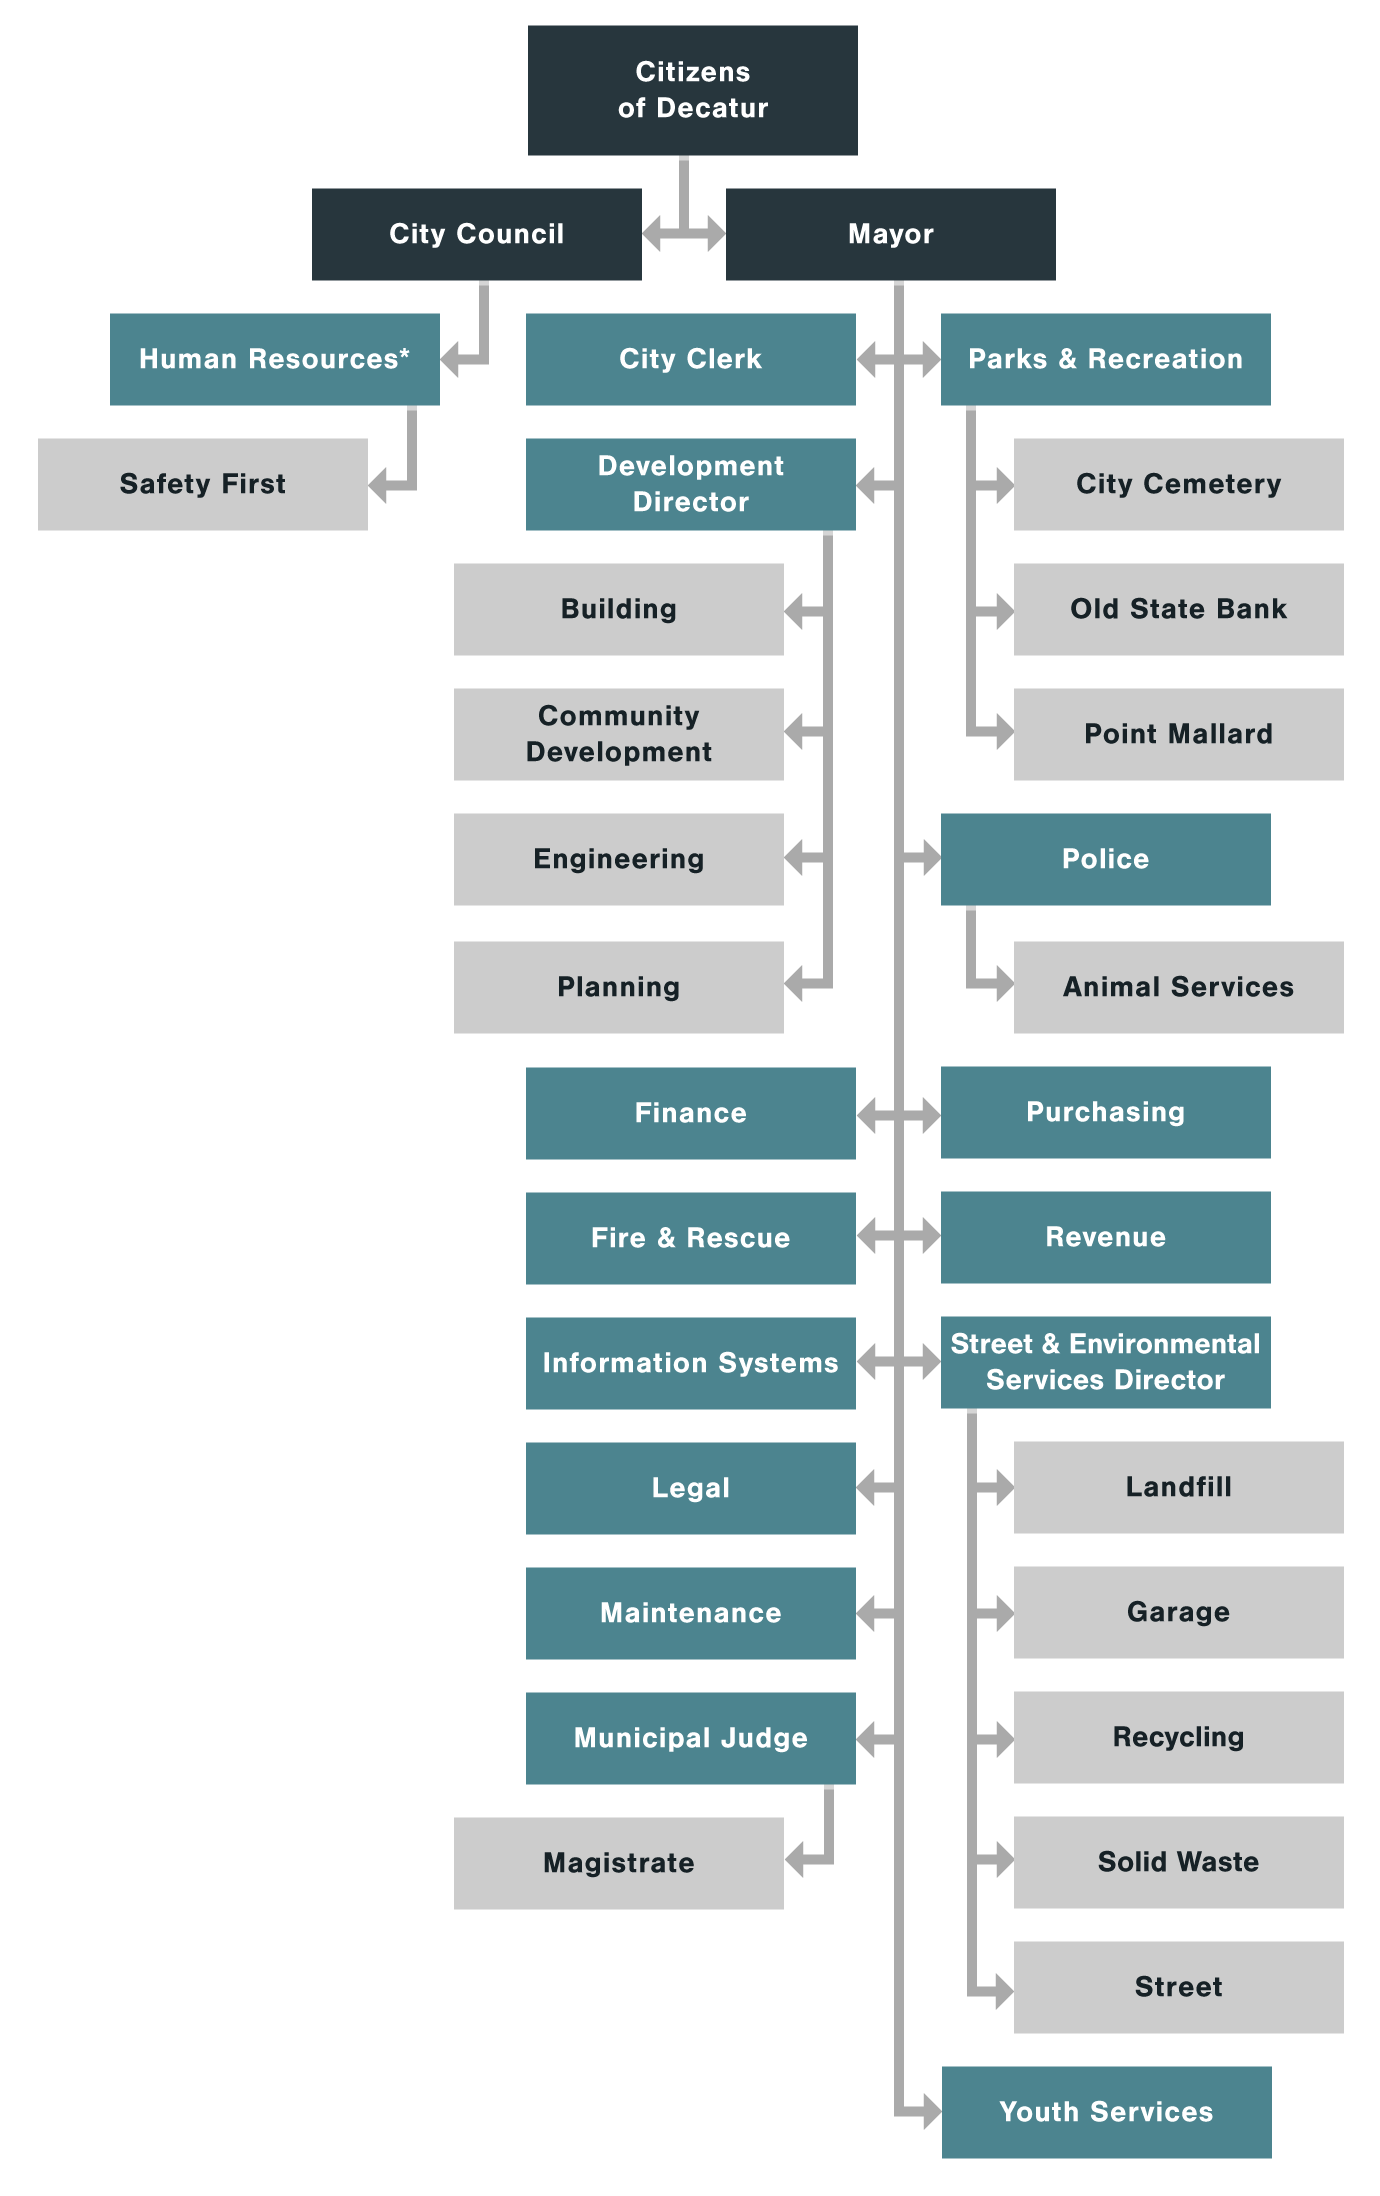 Community Bank Organizational Chart